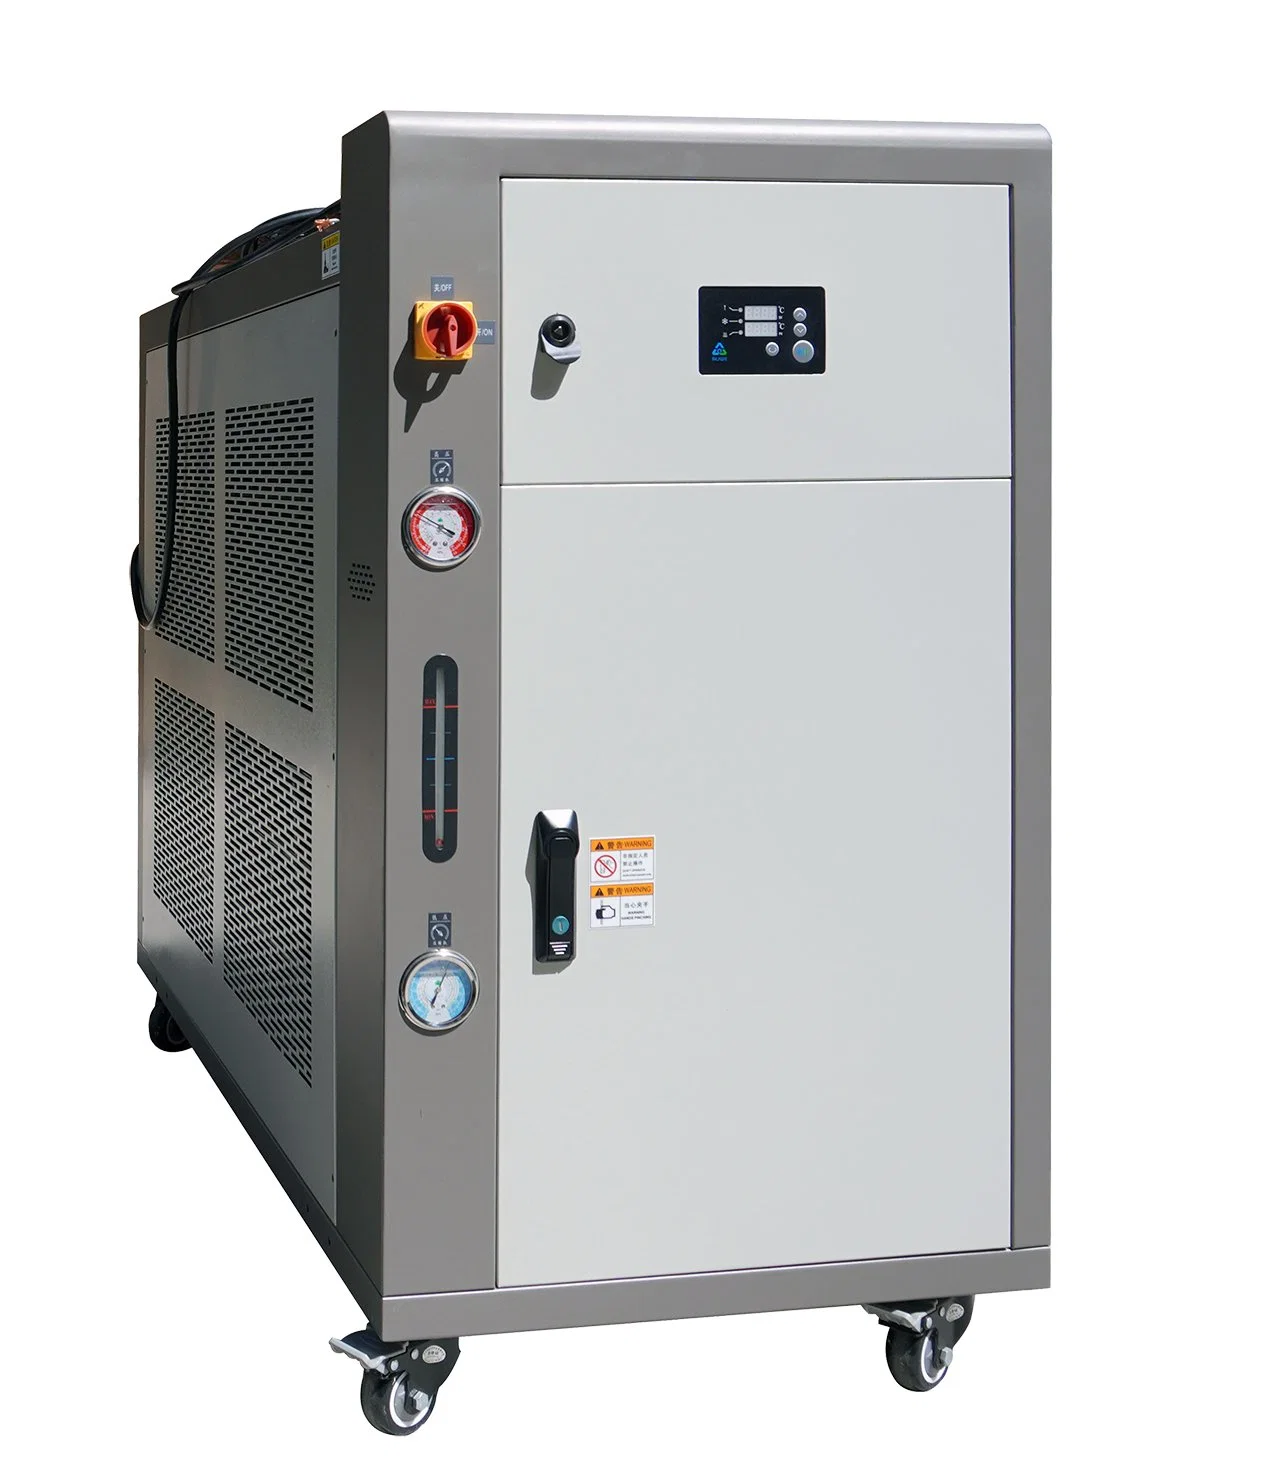 Industrial Commercial de l'eau chiller / refroidi par air / Systèmes de refroidissement du conditionneur